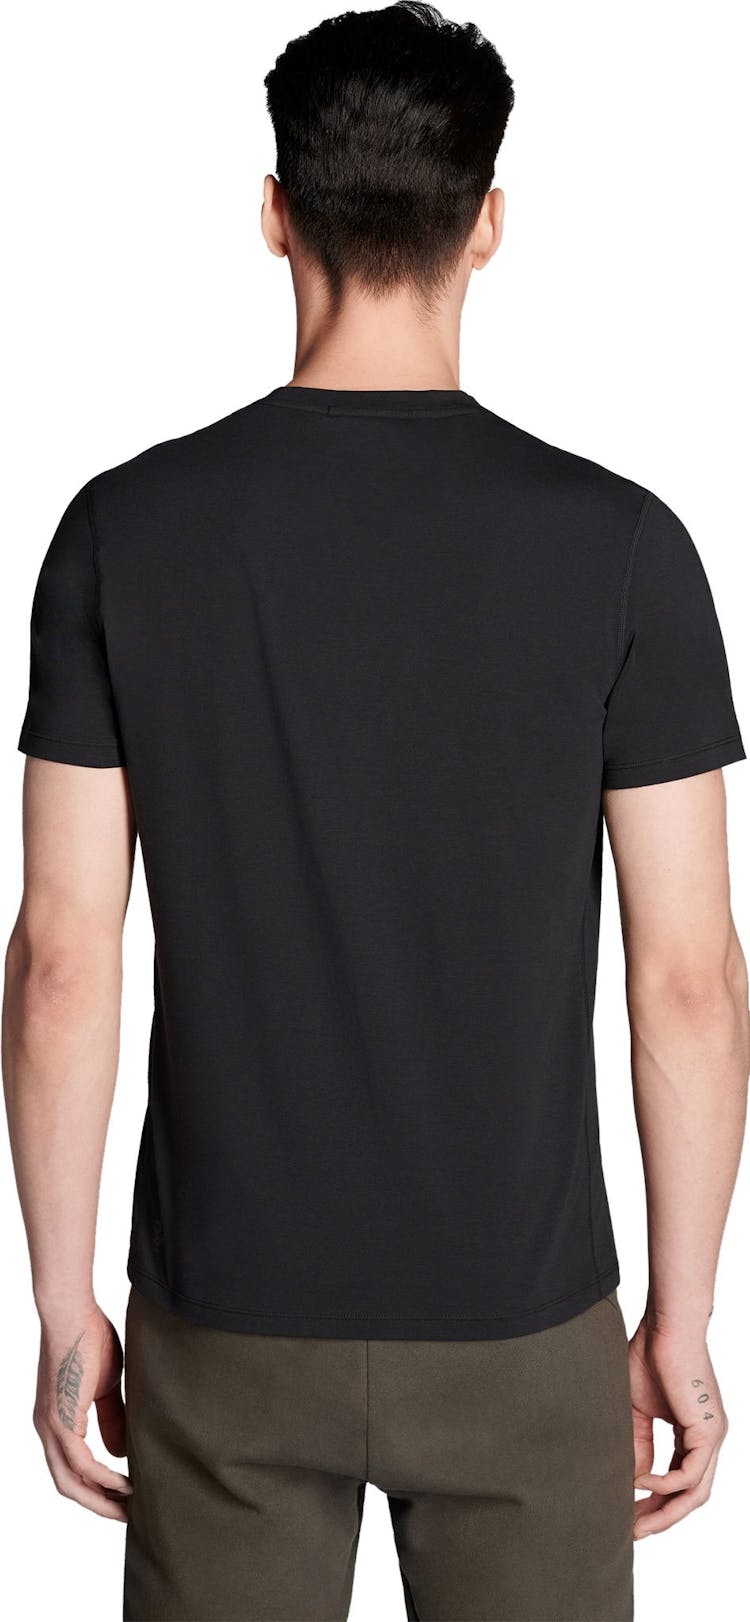 Numéro de l'image de la galerie de produits 2 pour le produit T-shirt Standard Issue - Unisex